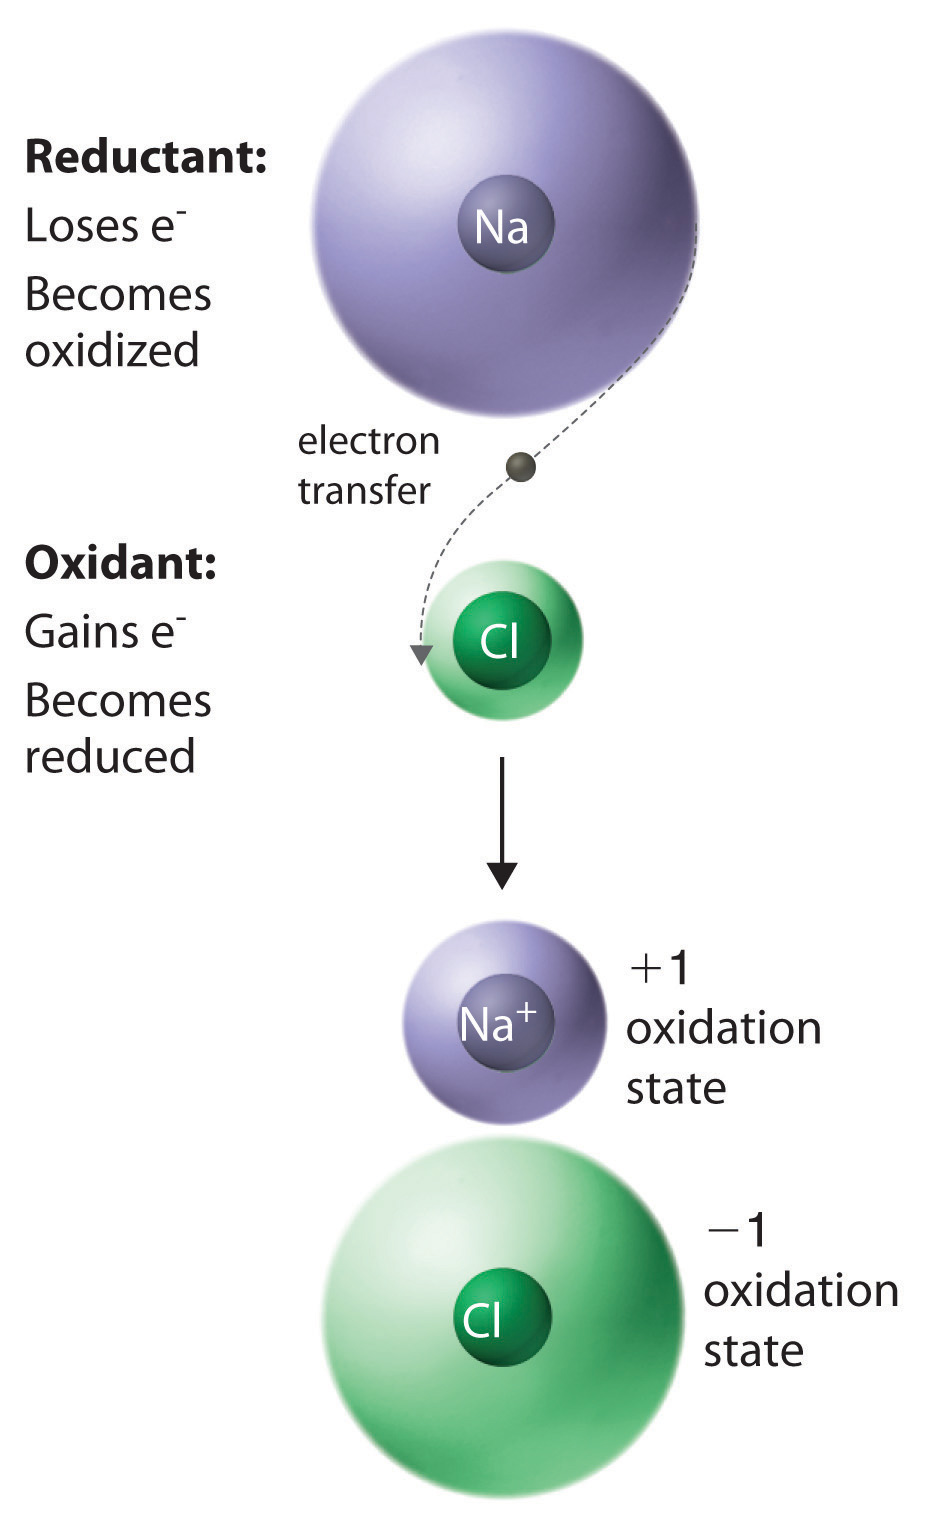 El reductor (sodio) pierde un electrón para oxidarse. El electrón se transfiere al oxidante (cloro) el cual se reduce.